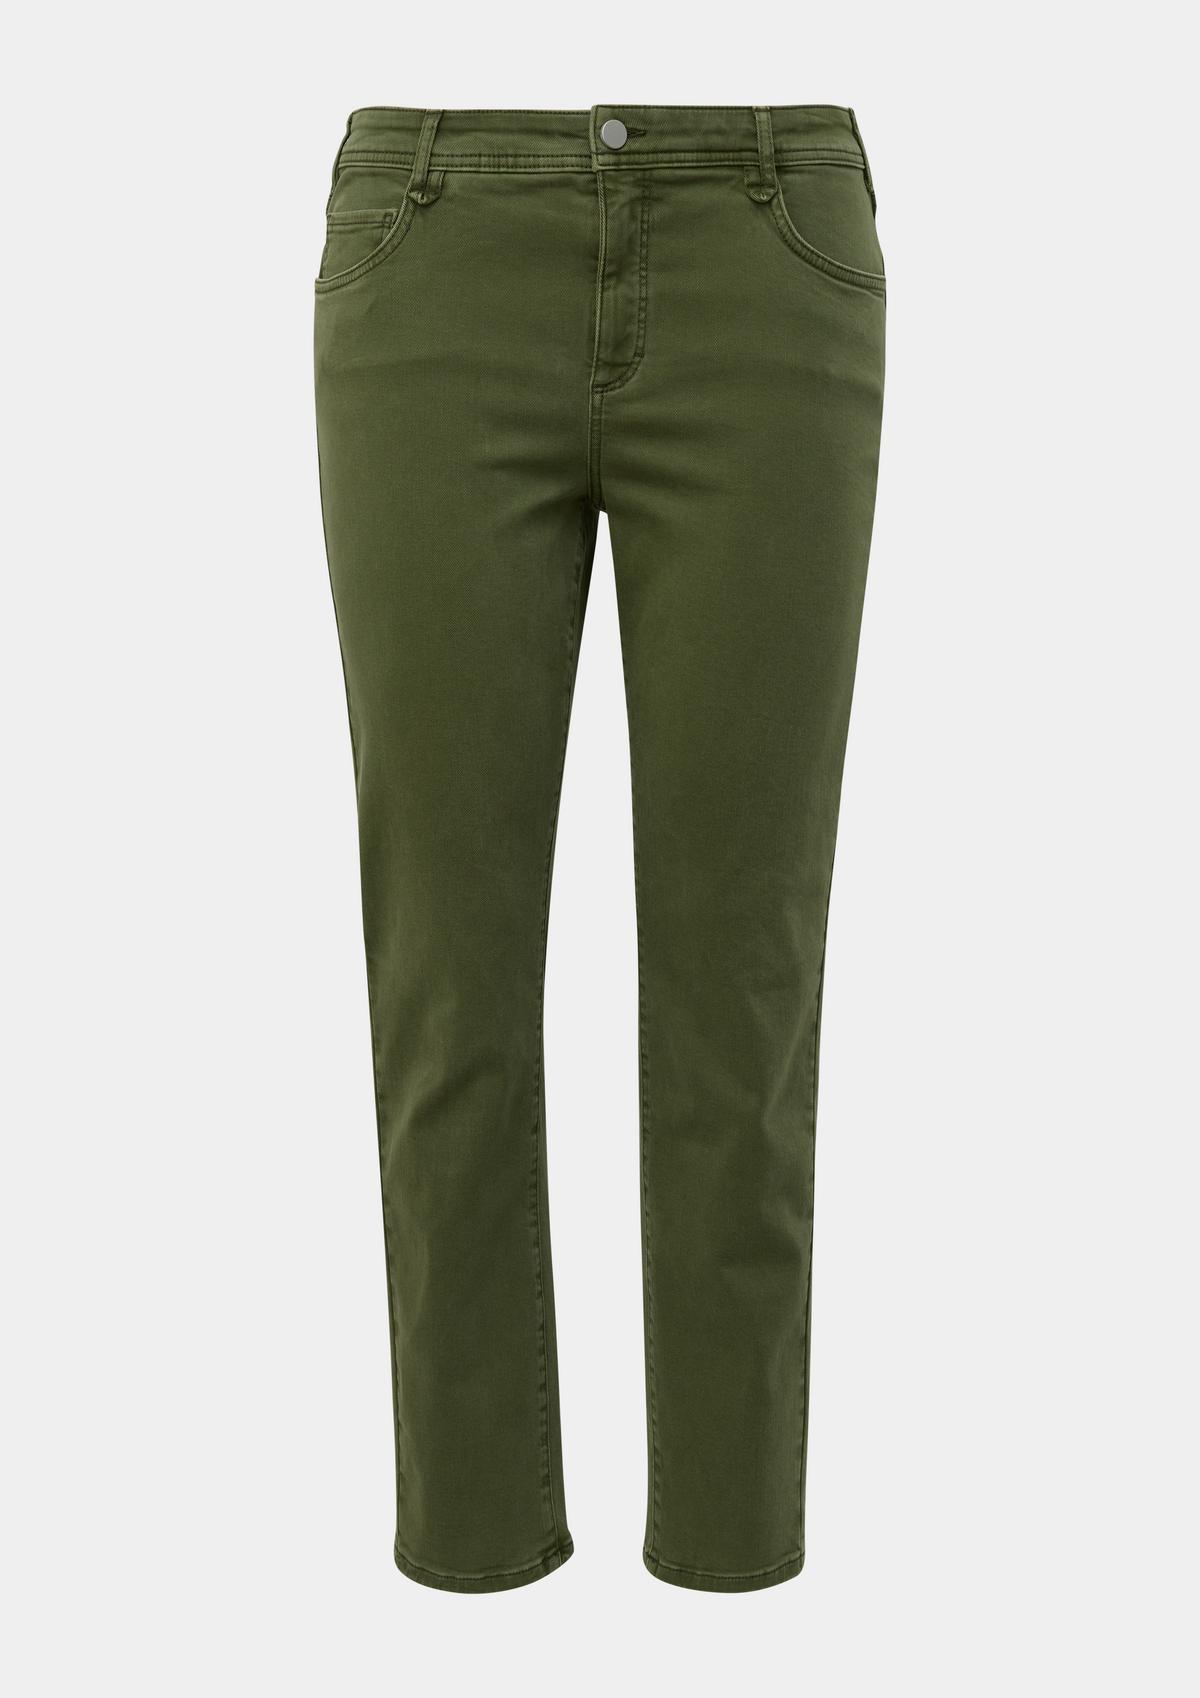 s.Oliver Jeans hlače / kroj Regular Fit/ Mid Rise / ravne hlačnice / tvil